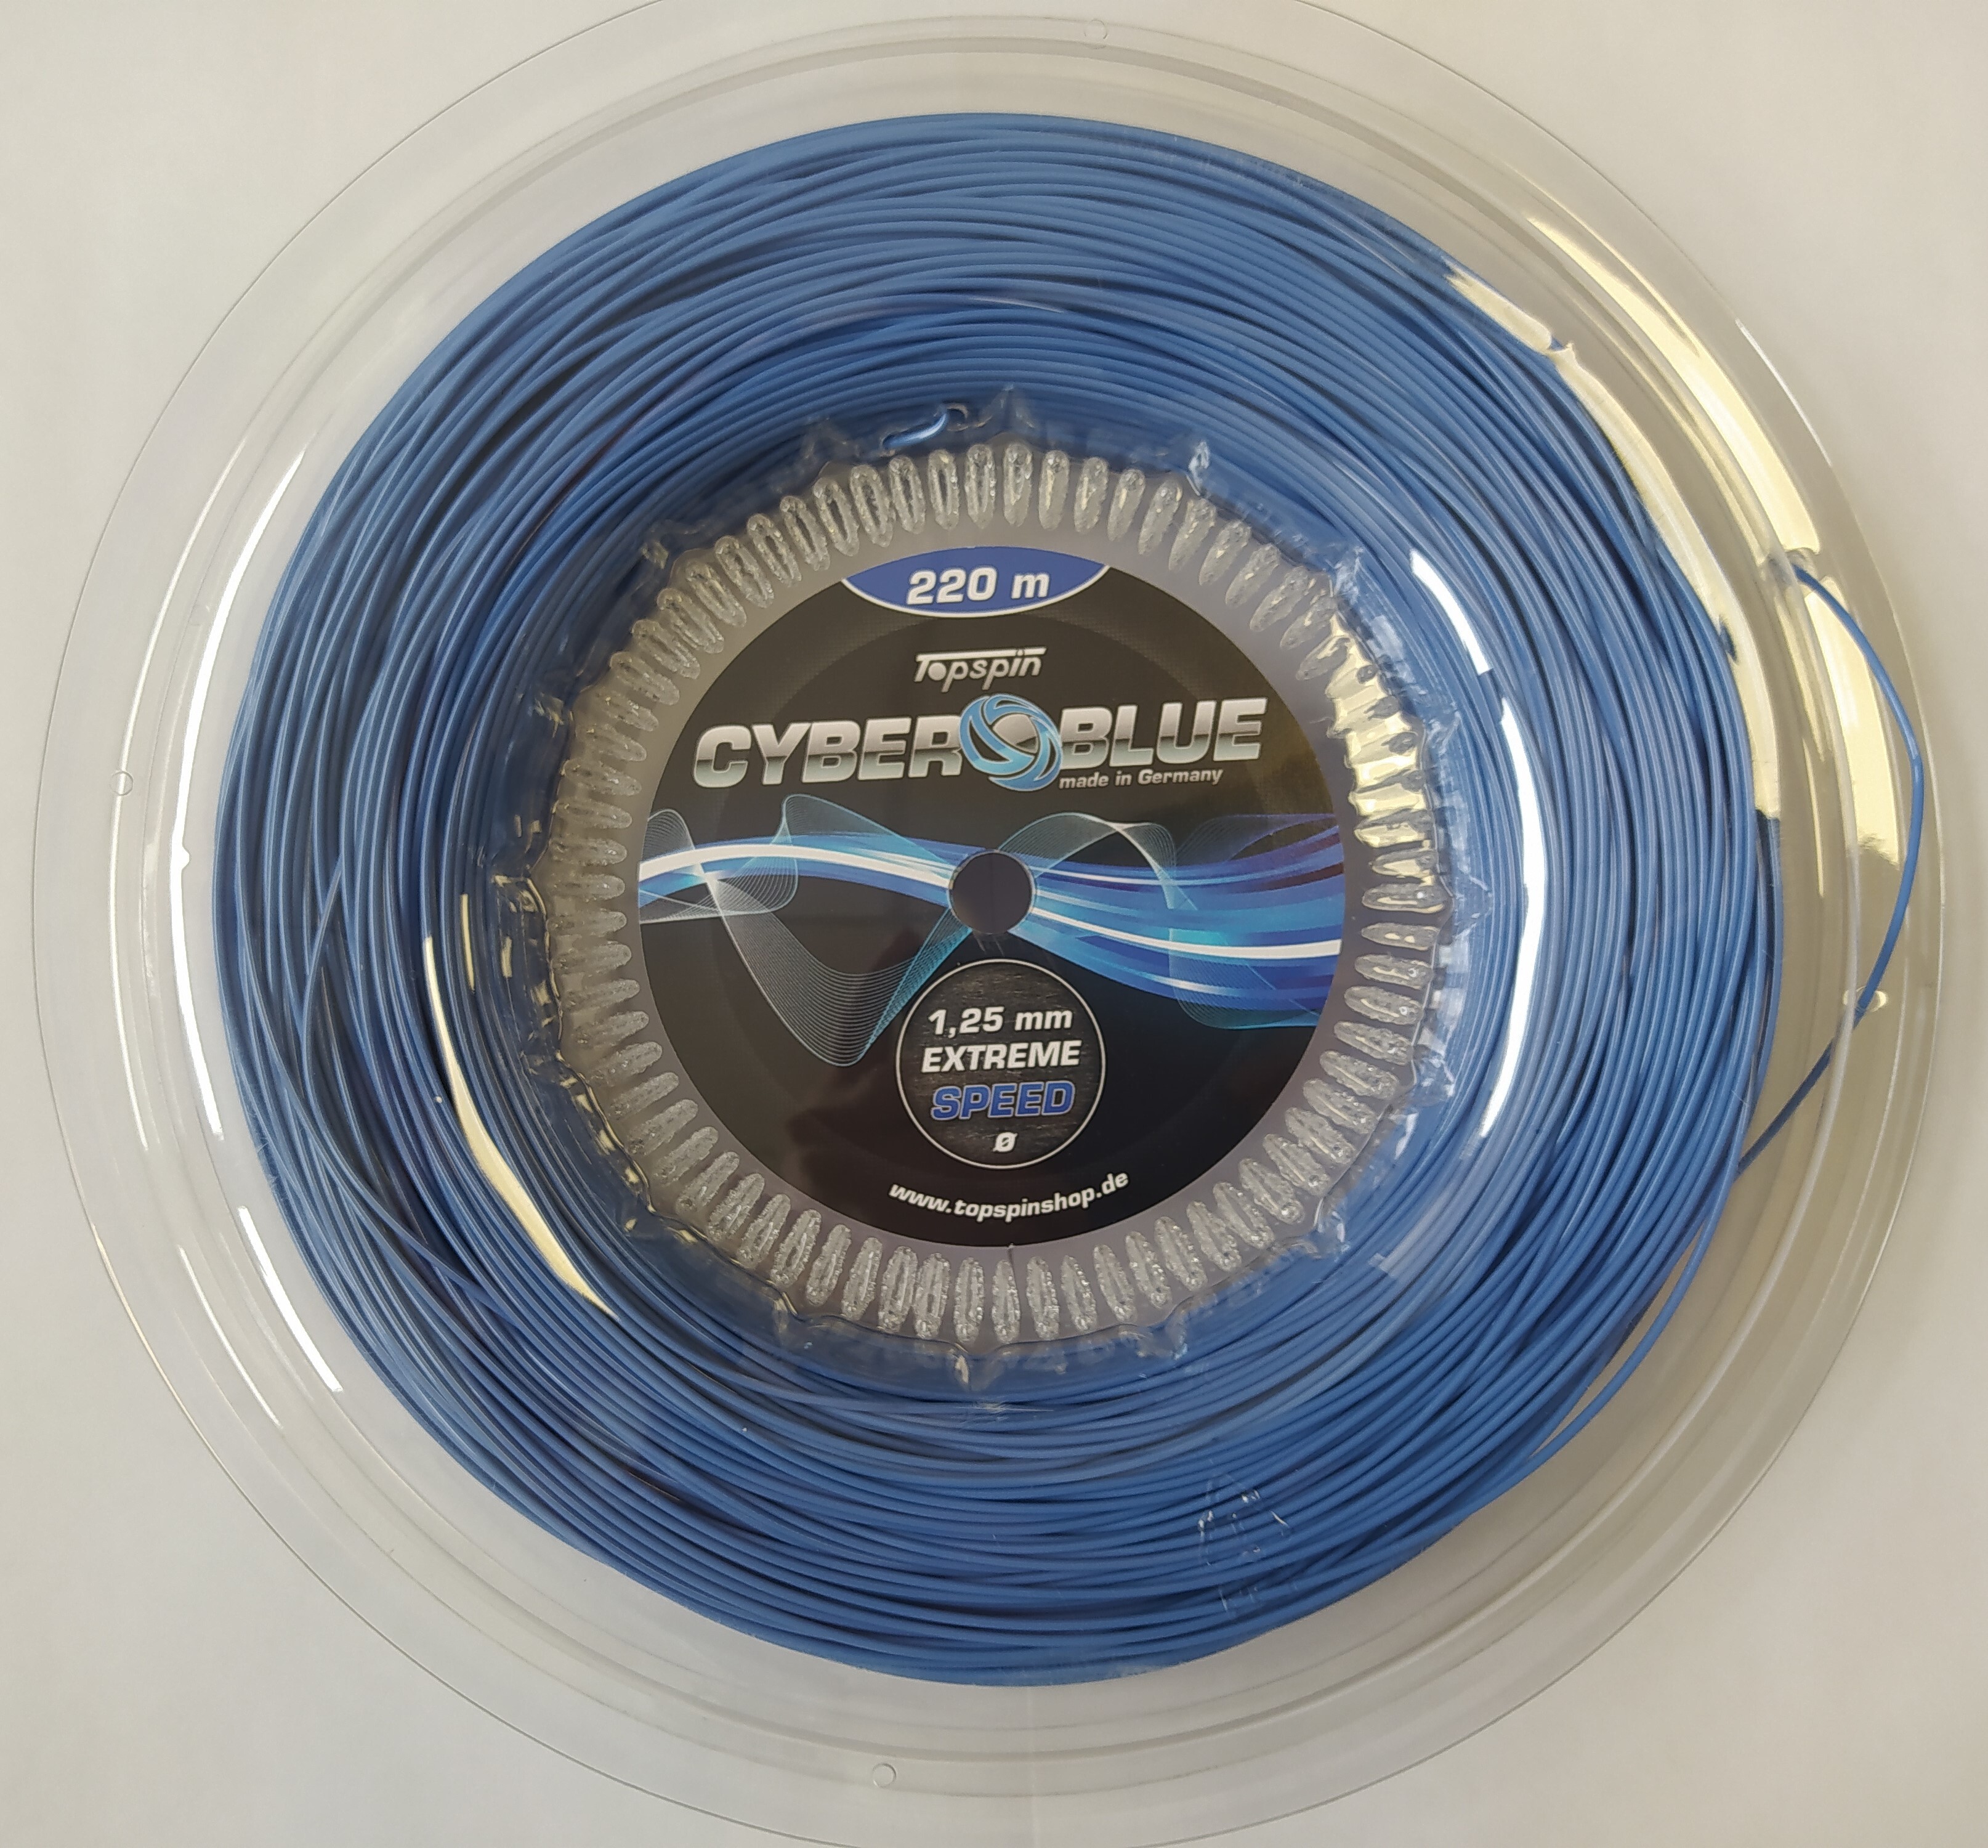 Струны для теннисной ракетки 220 м 1,25 мм Topspin CYBER BLUE EXTREME SPEED